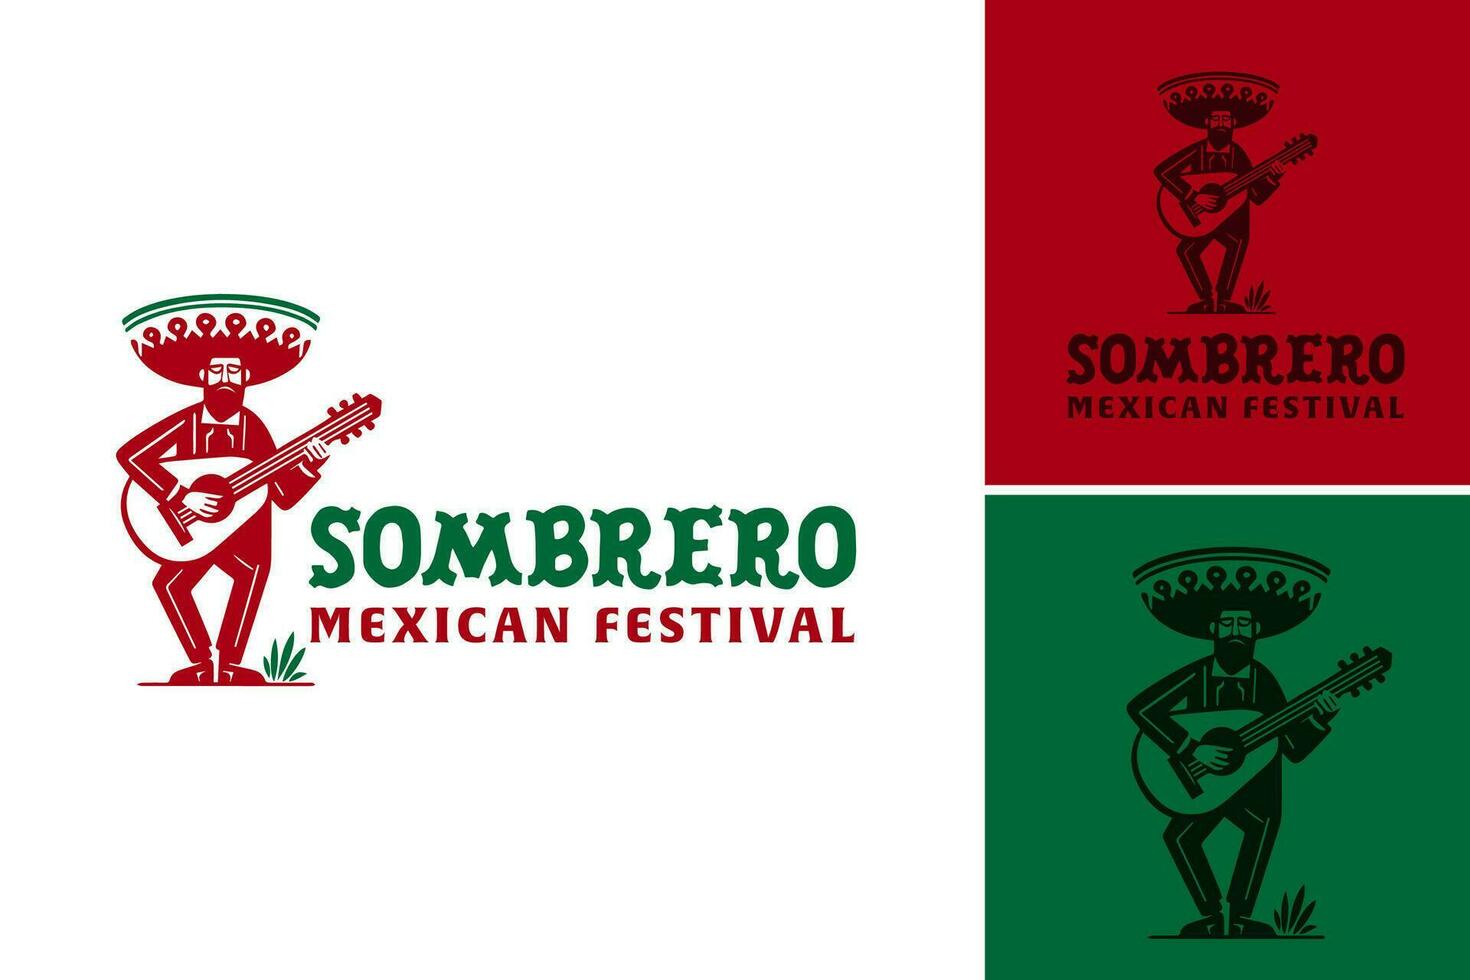 sombrero mexicain Festival logo est adapté pour l'image de marque ou promouvoir une thème mexicain Festival ou événement. vecteur